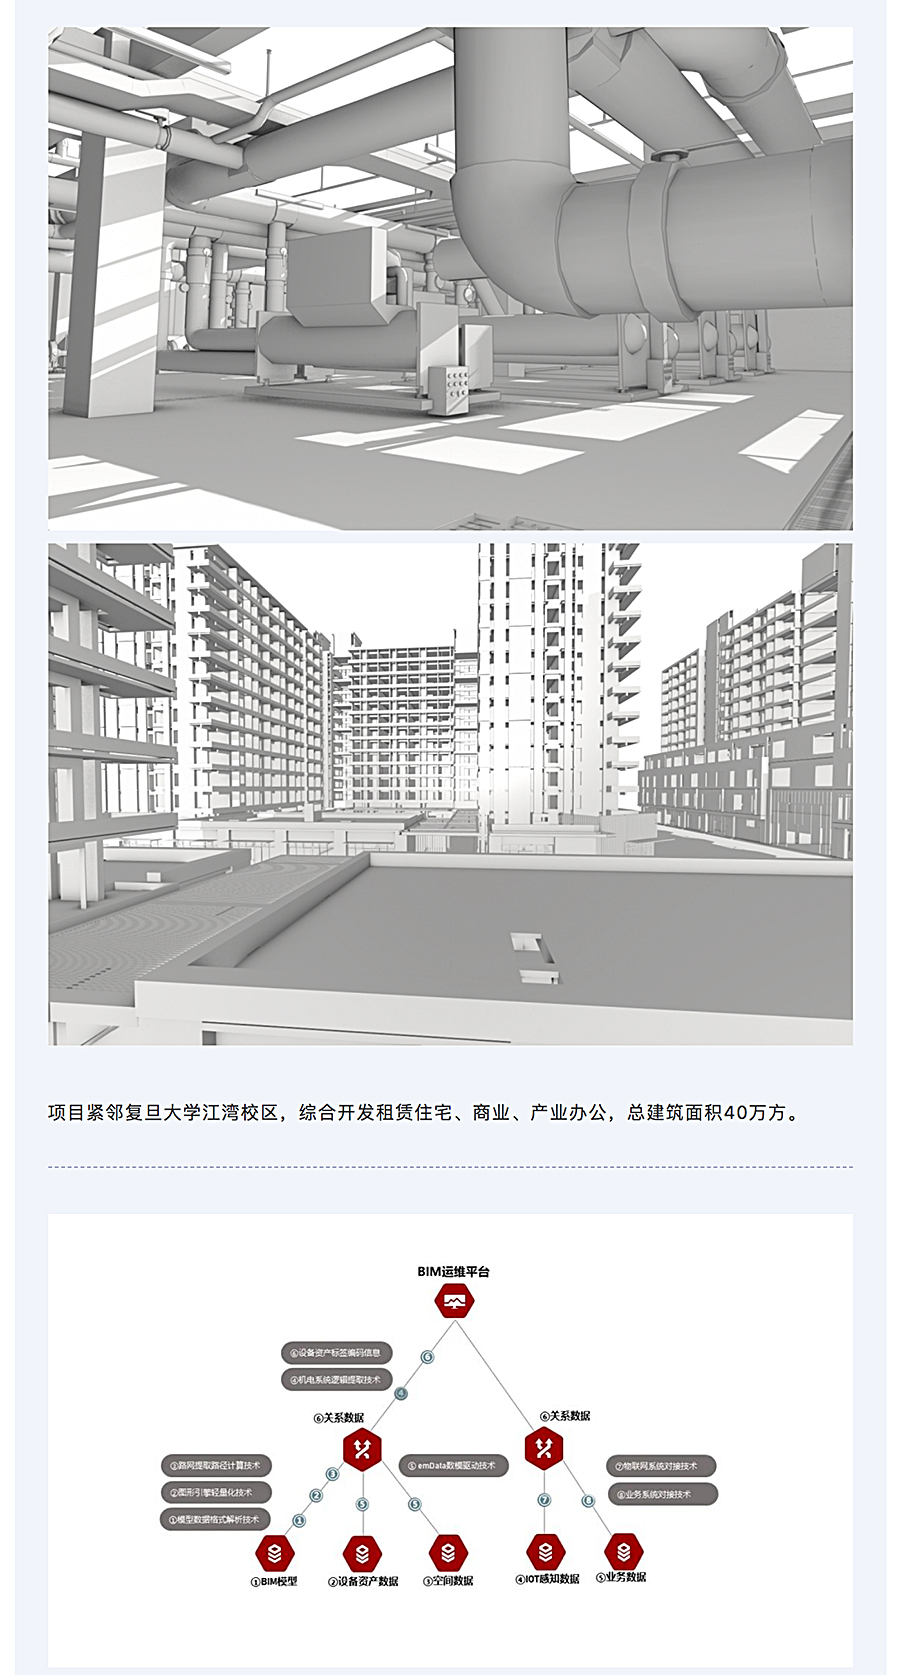 千万级数据贯通-_-上海城投湾谷租赁住宅项目BIM运维研究与实施_0001_图层-2.jpg